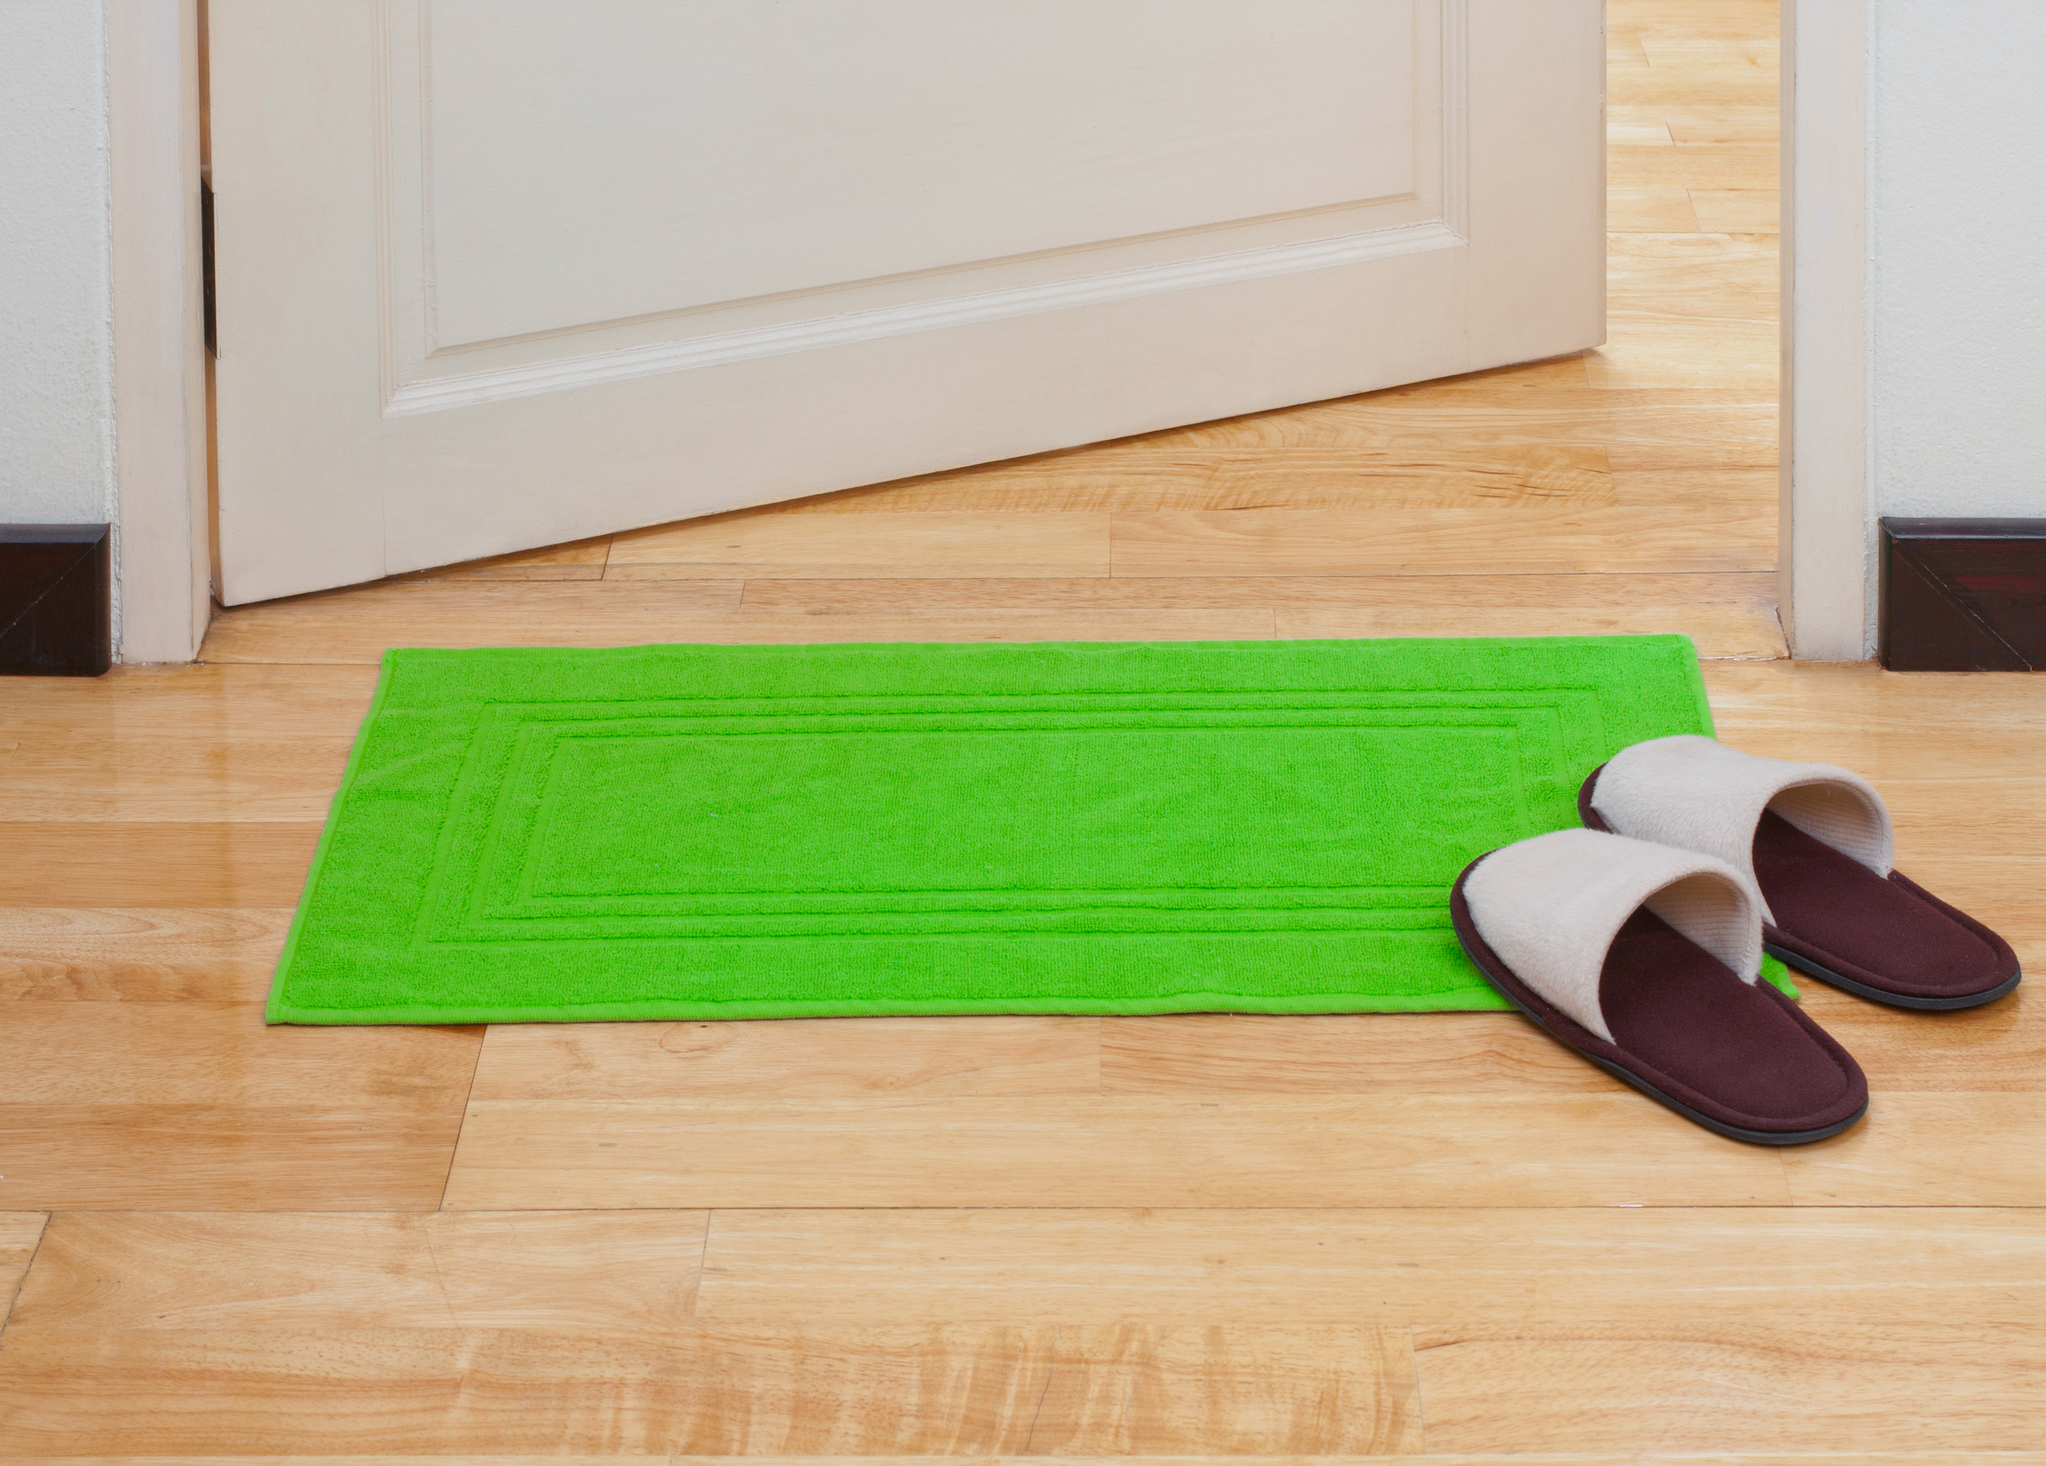 Ha csak épp szeretnéd megvillantani a zöld színt a lakásodban, akkor szerezz be egy zöld lábtörlőt, és már kész is vagy!